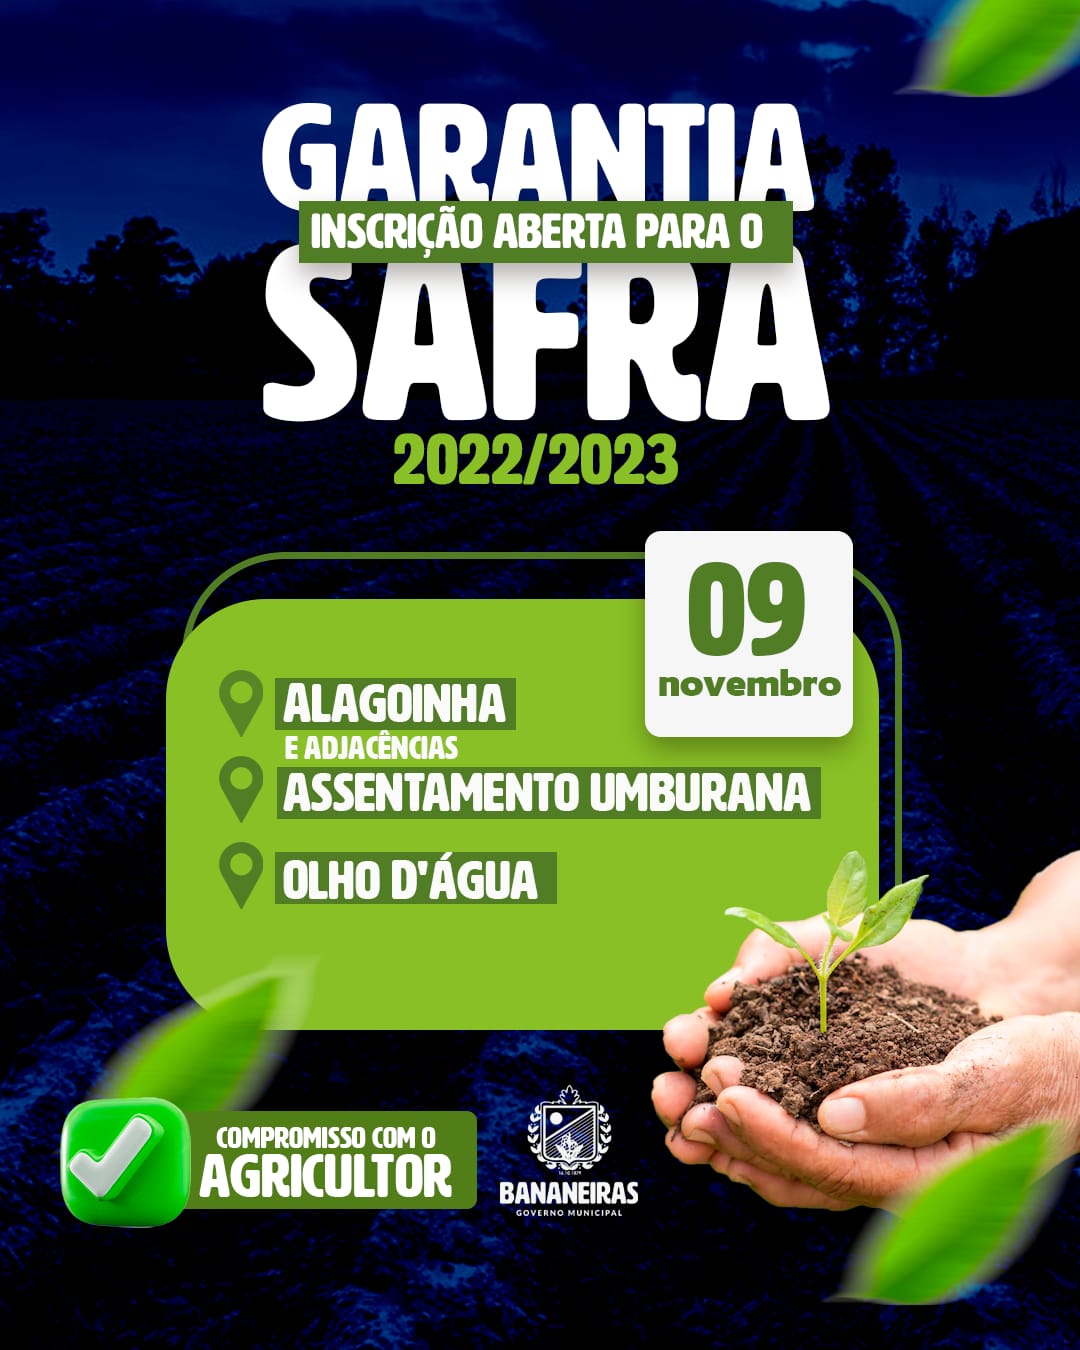 Inscrições abertas para o Garantia Safra edição 2022/2023